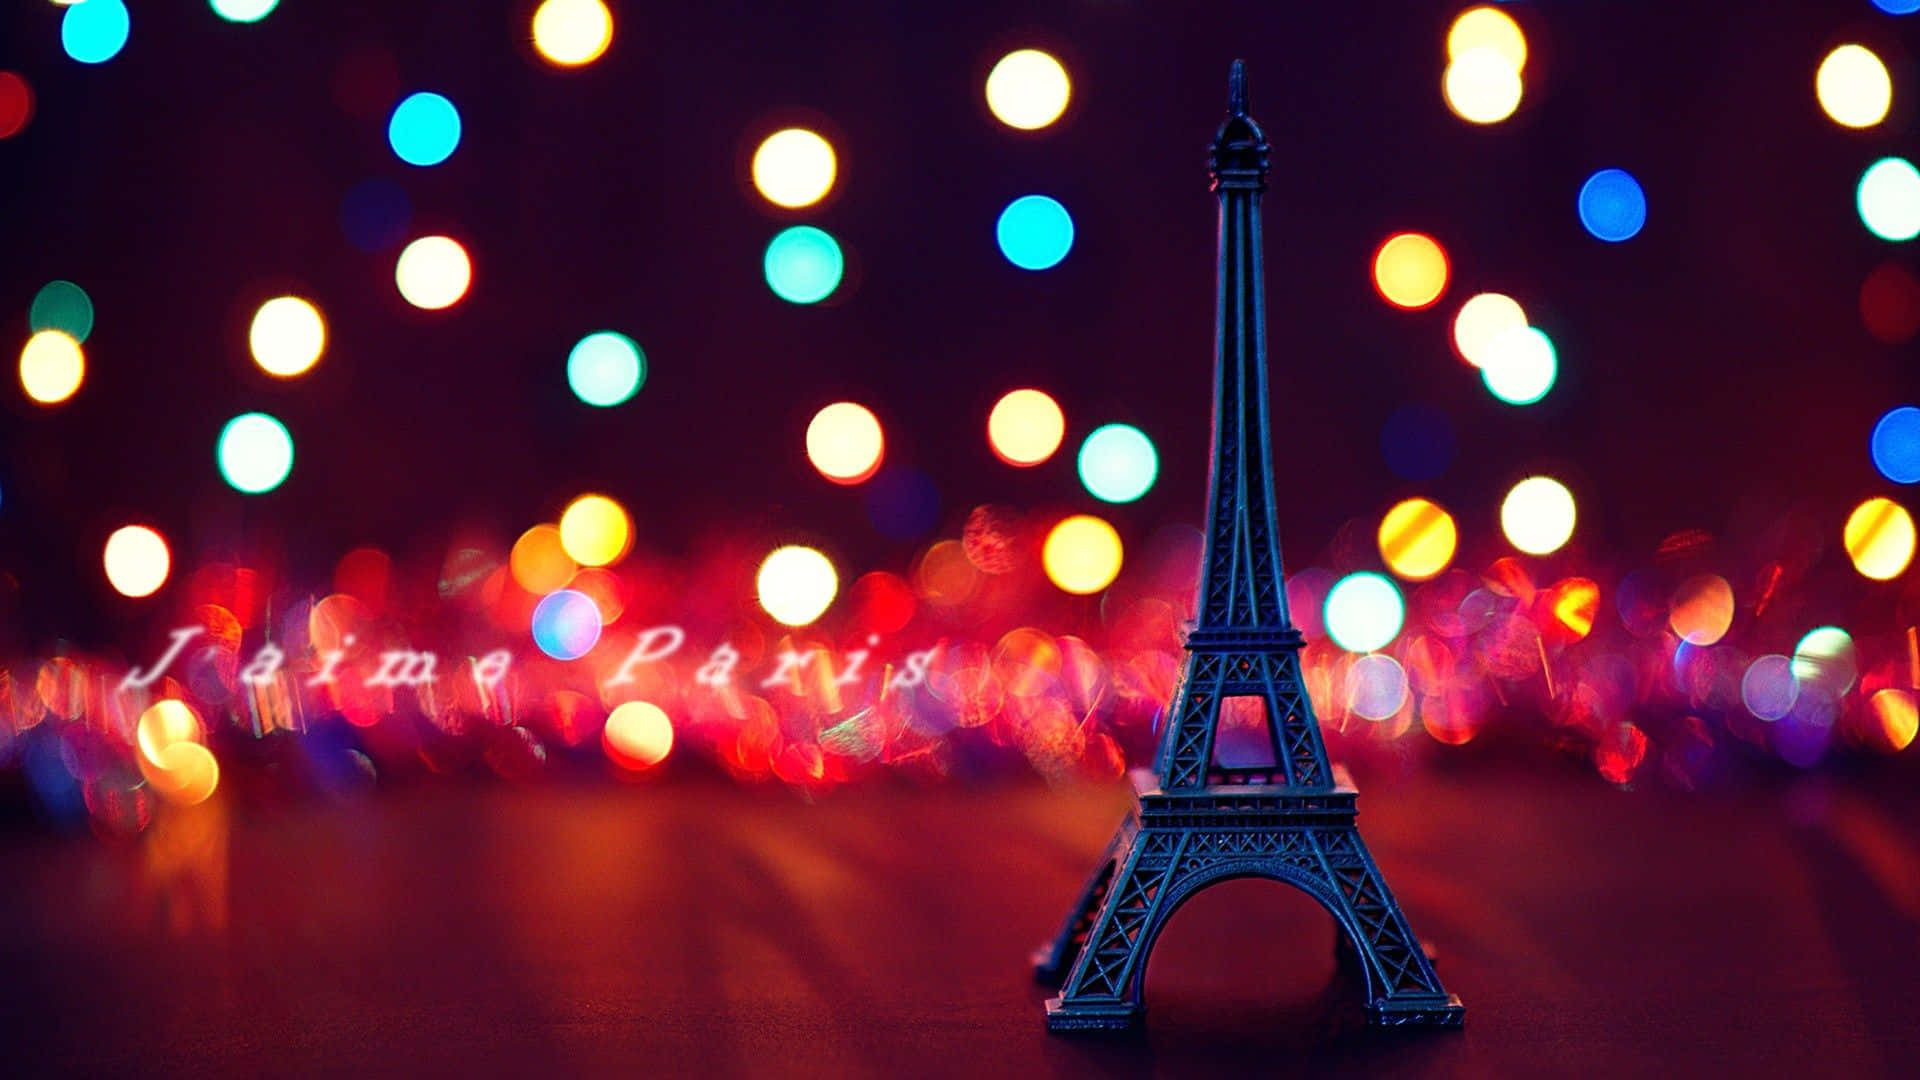 Fondolindo Con Pequeña Imagen De La Torre Eiffel En Pantalla.